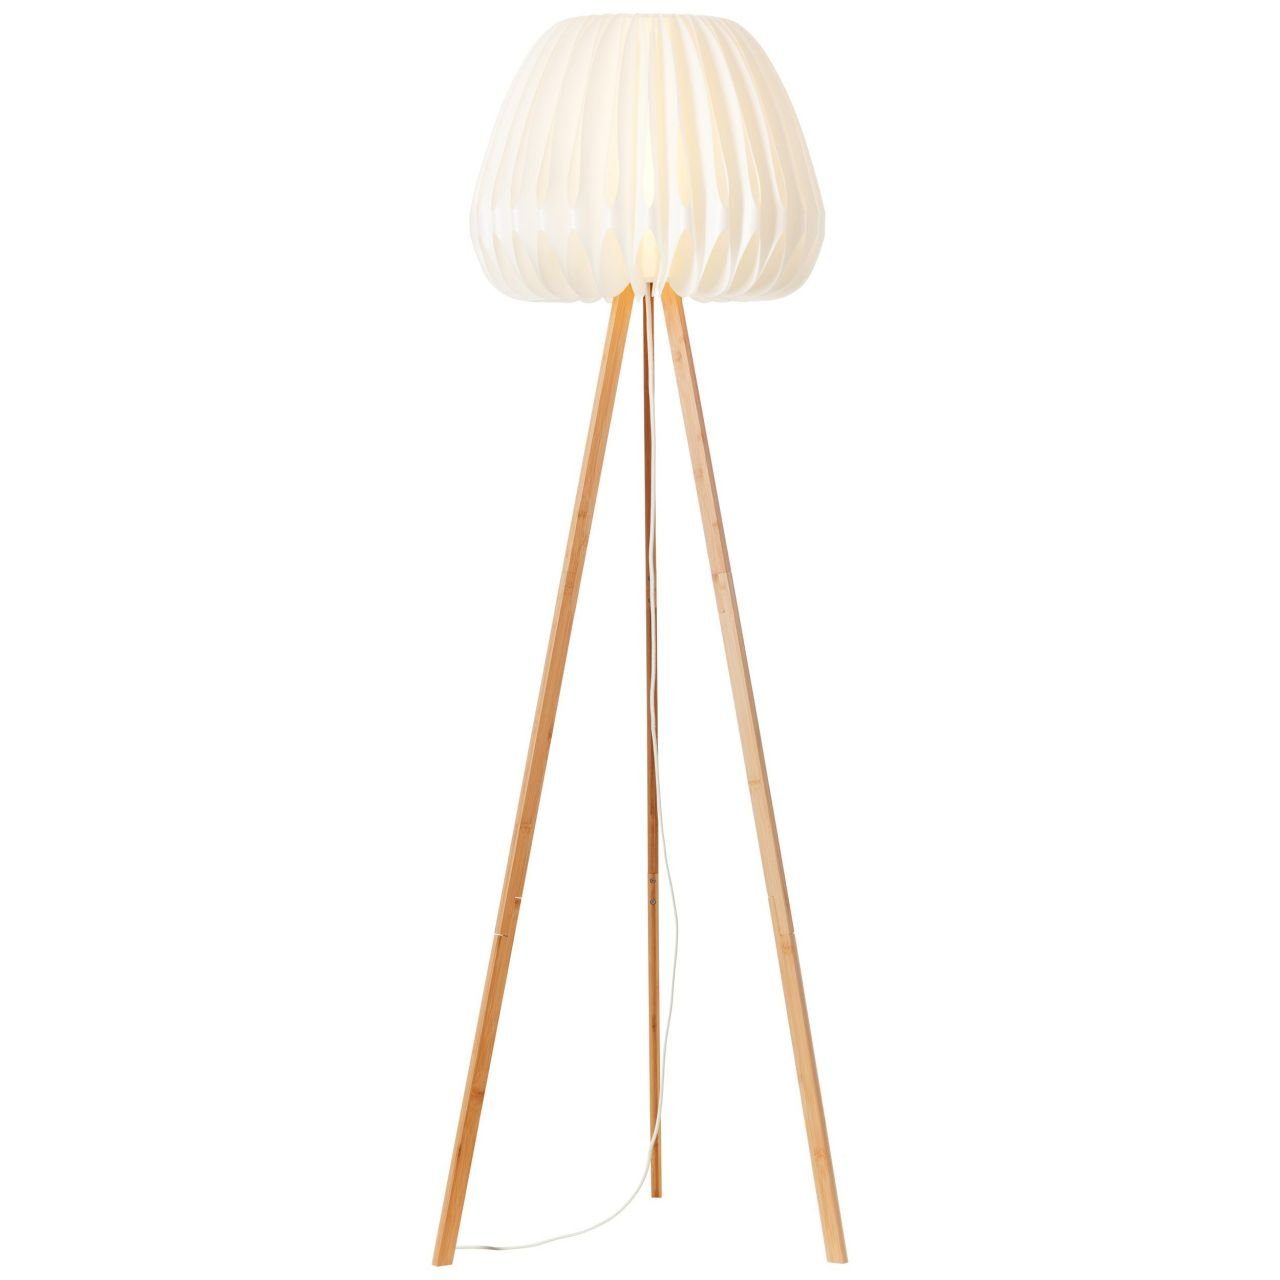 Brilliant Stehlampe Inna, dreibeinig holz Lampe, Inna hell/weiß, Bambus/Kunststoff Standleuchte